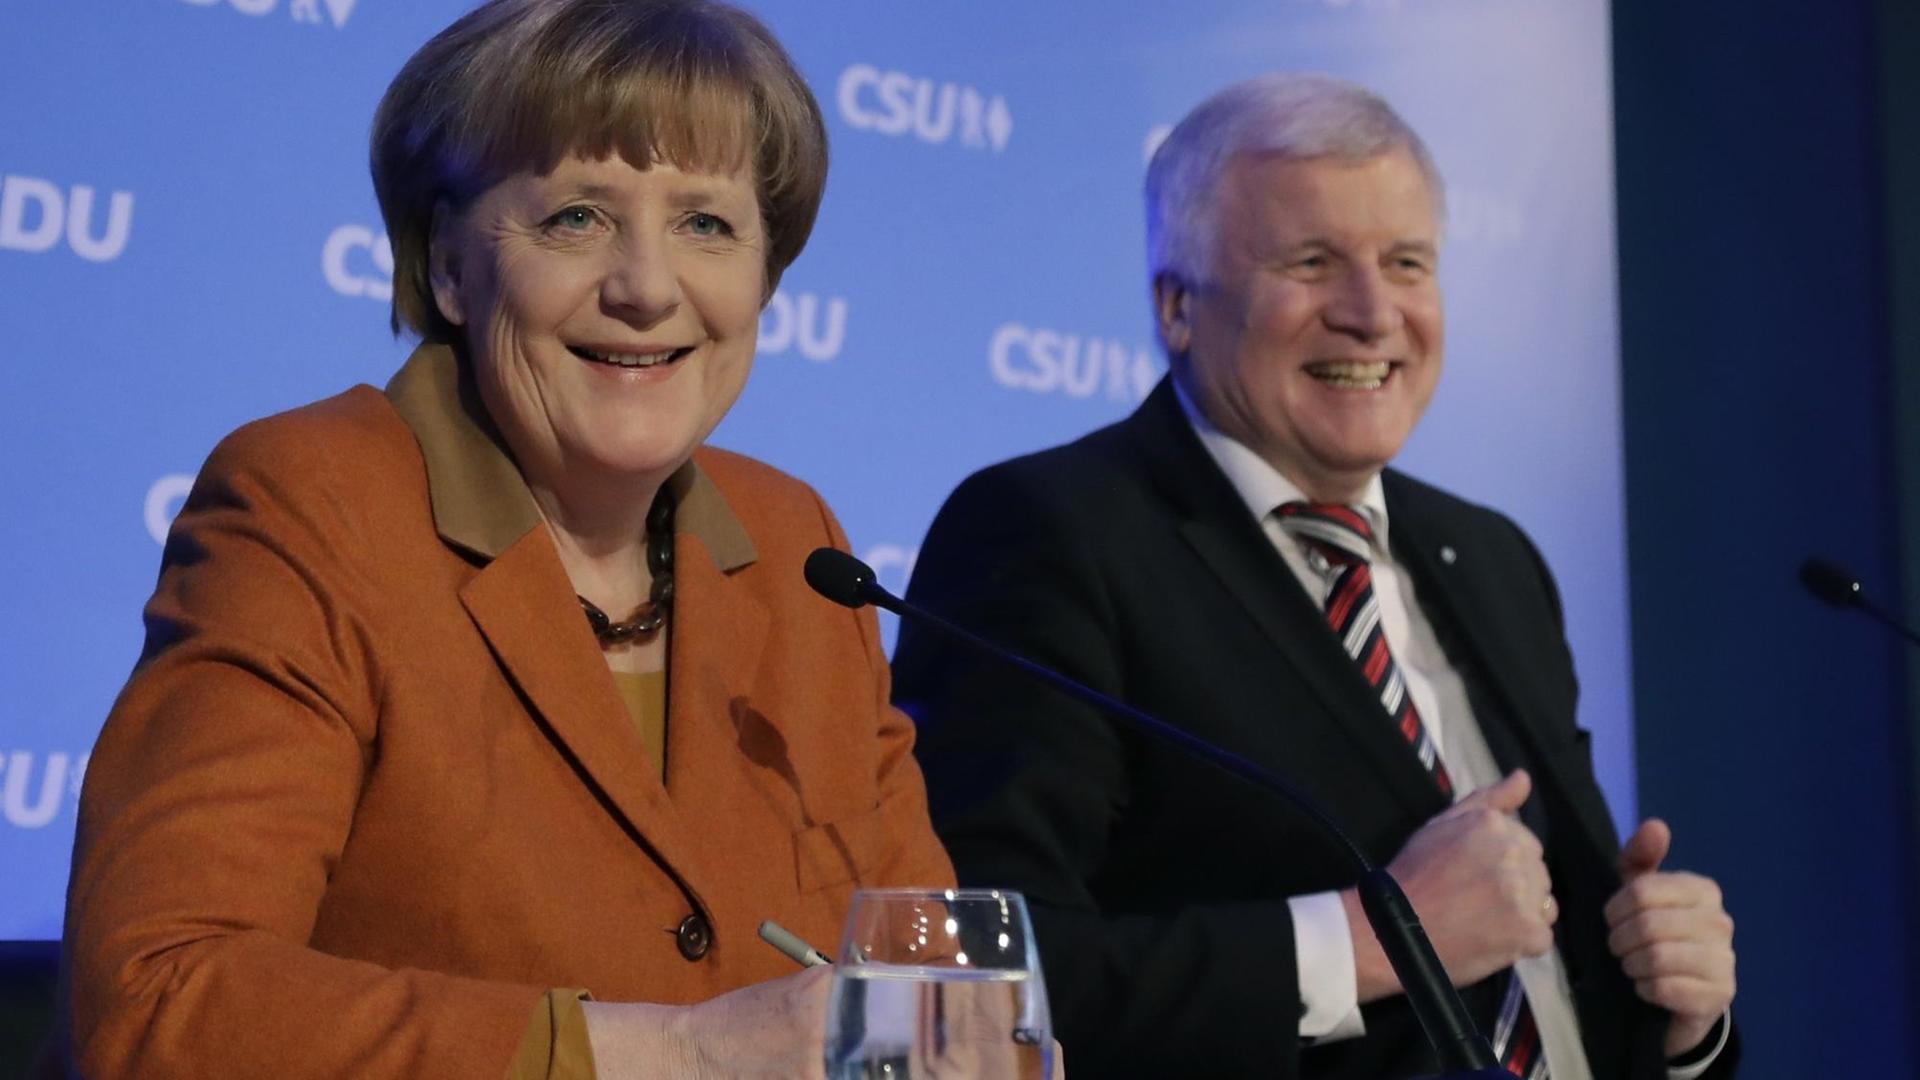 Sie sehen Bundeskanzlerin Merkel und CSU-Chef Seehofer auf einer gemeinsamen Pressekonferenz. Beide lachen.